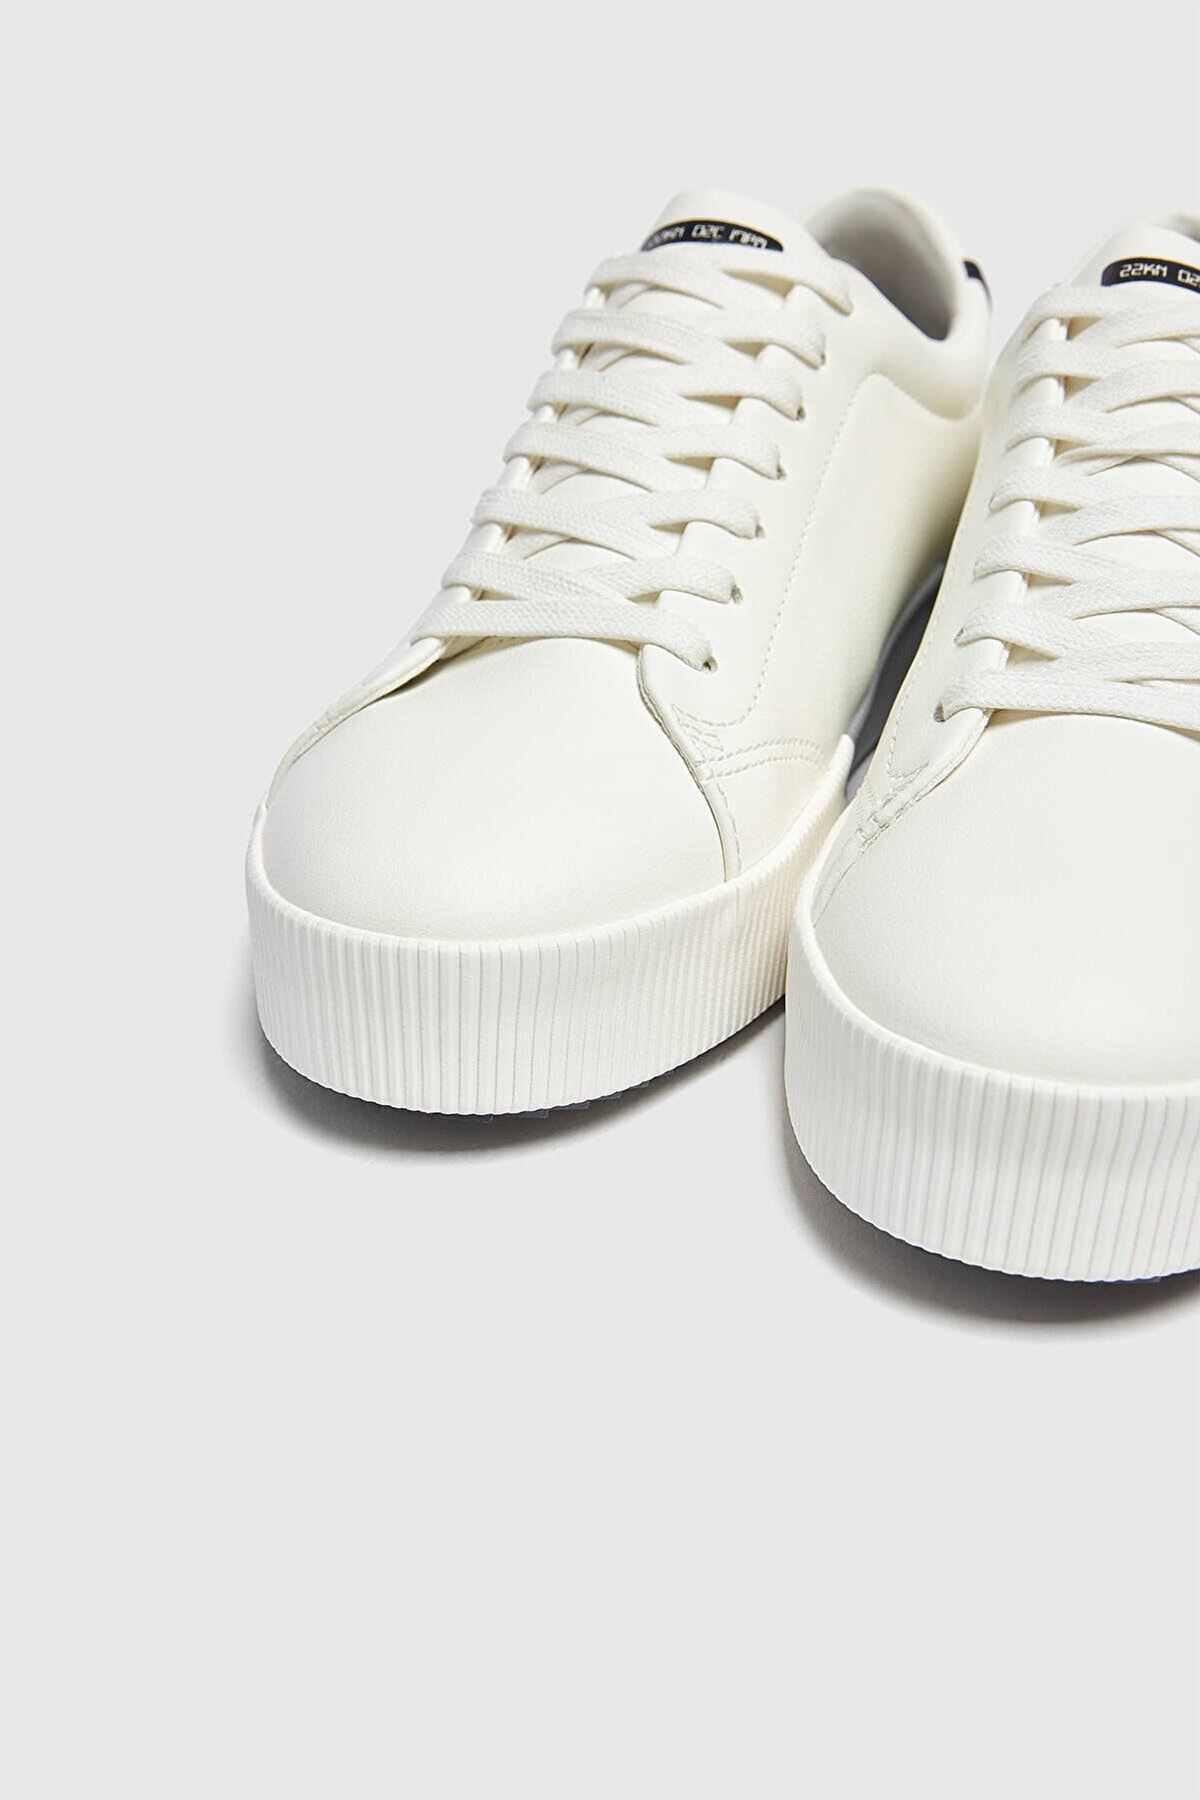 Boy Uzatan Gizli Topuklu Kalın Tabanlı Beyaz Spor Ayakkabı MYY368